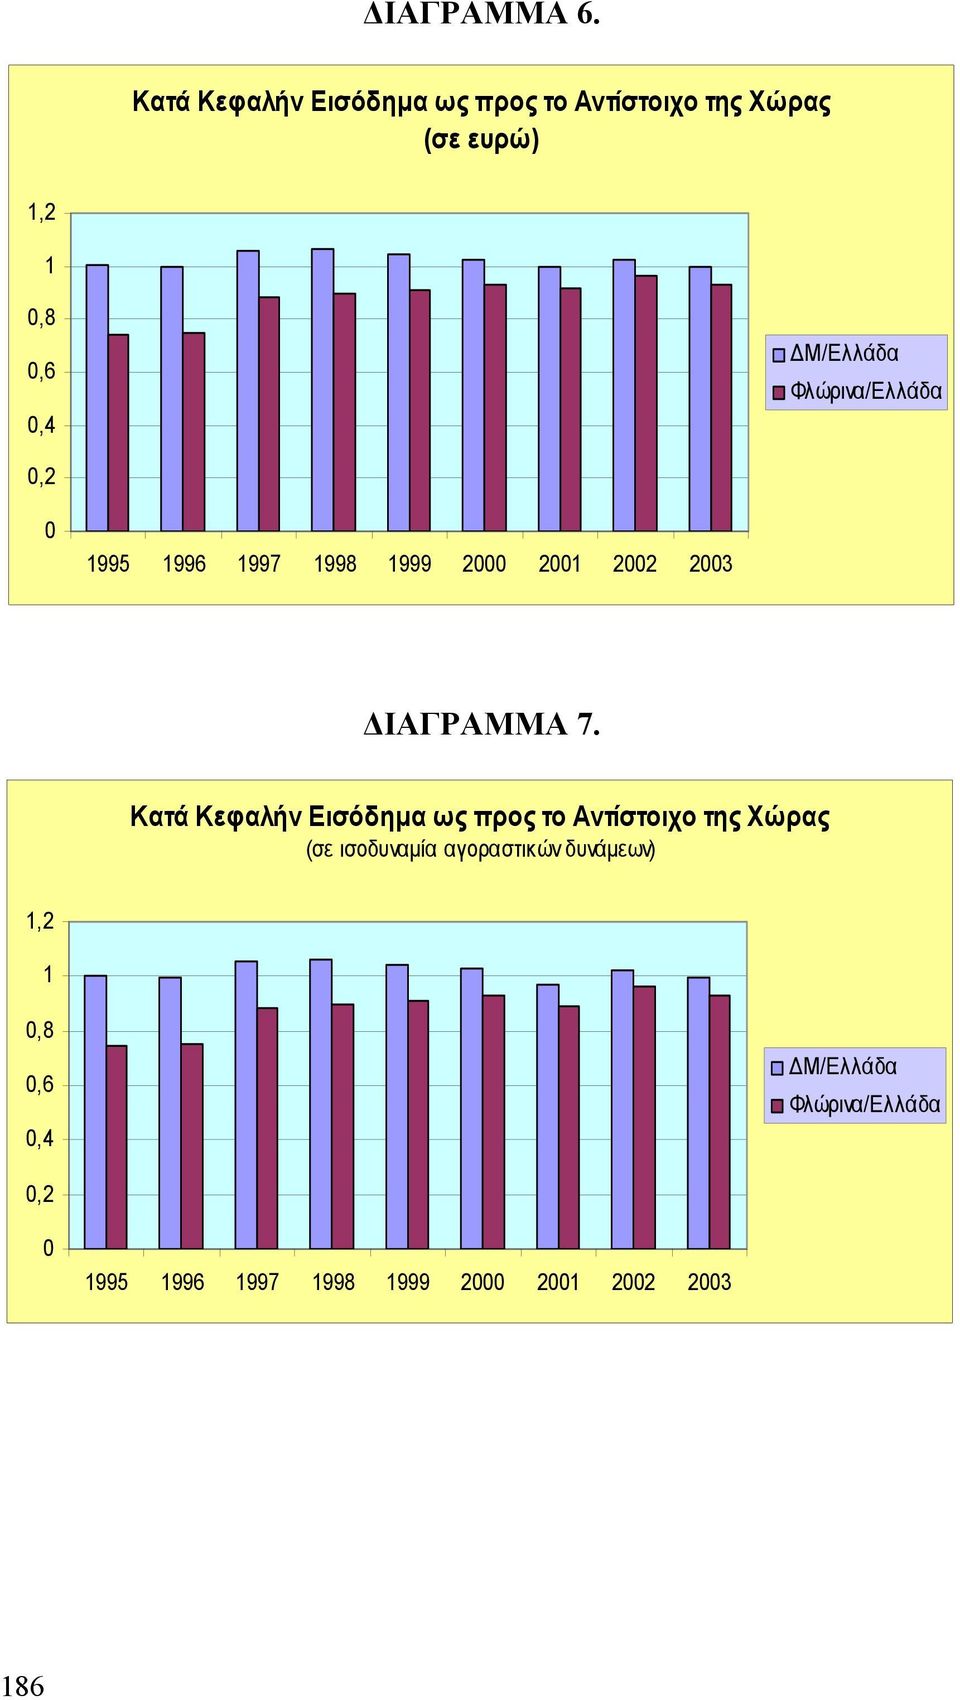 Φλώρινα/Ελλάδα 0,2 0 1995 1996 1997 1998 1999 2000 2001 2002 2003 ΔΙΑΓΡΑΜΜΑ 7.